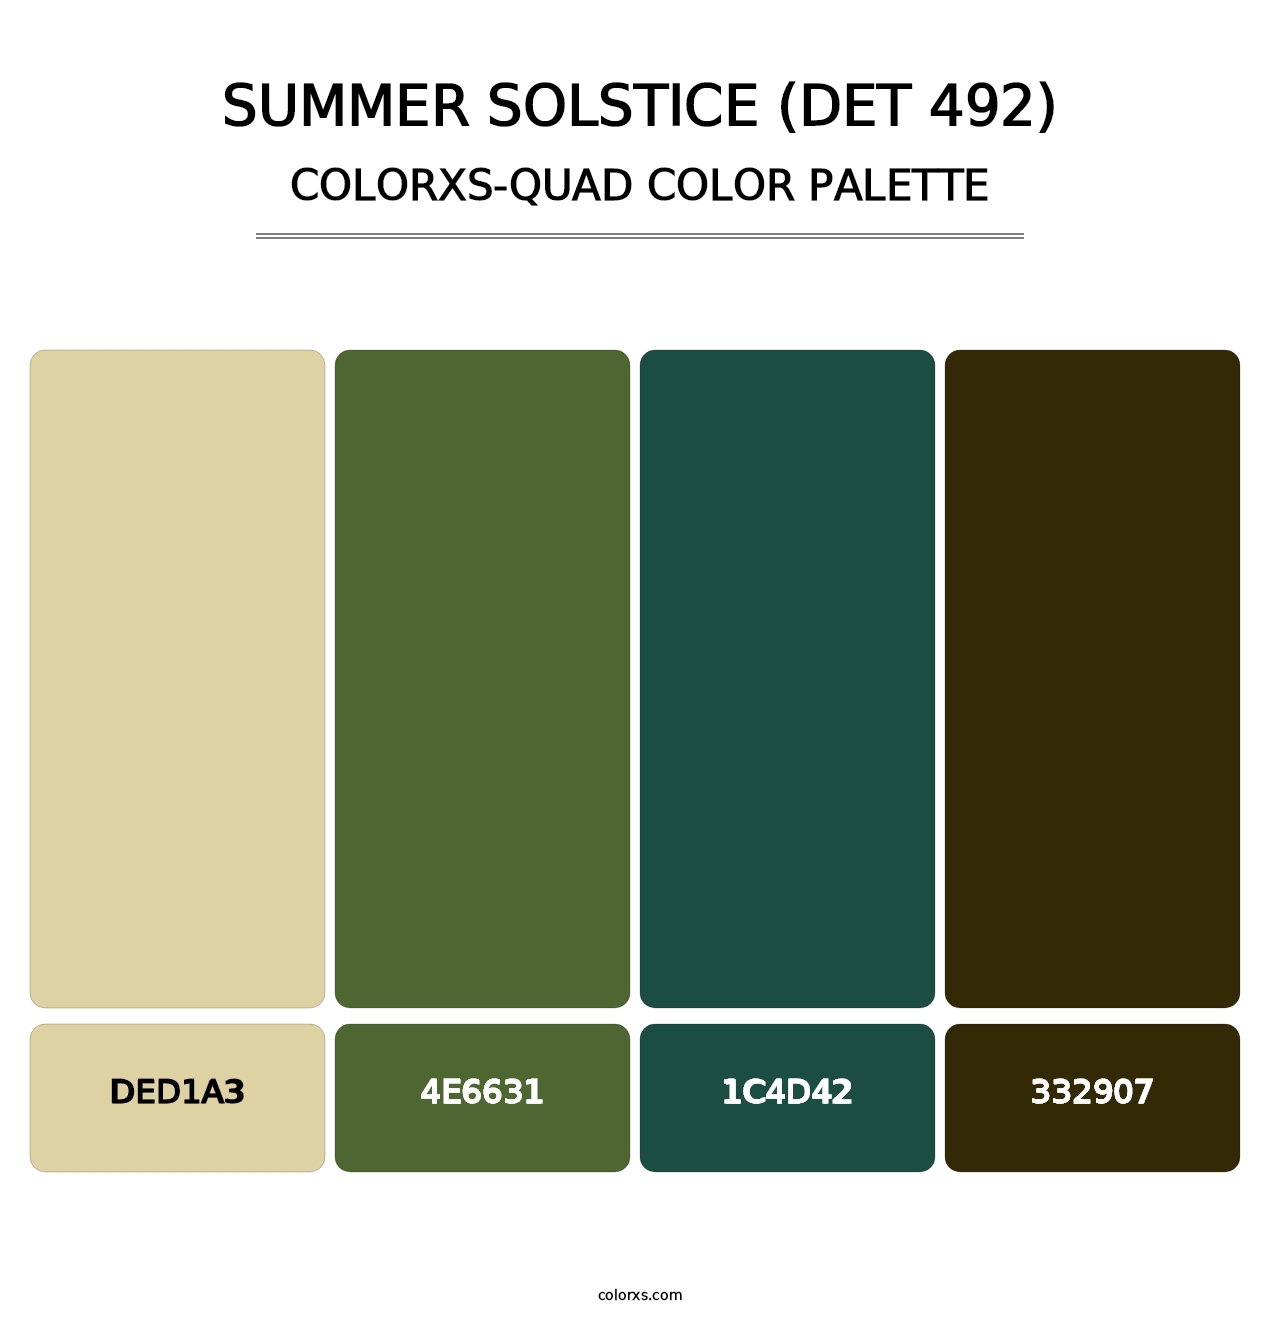 Summer Solstice (DET 492) - Colorxs Quad Palette